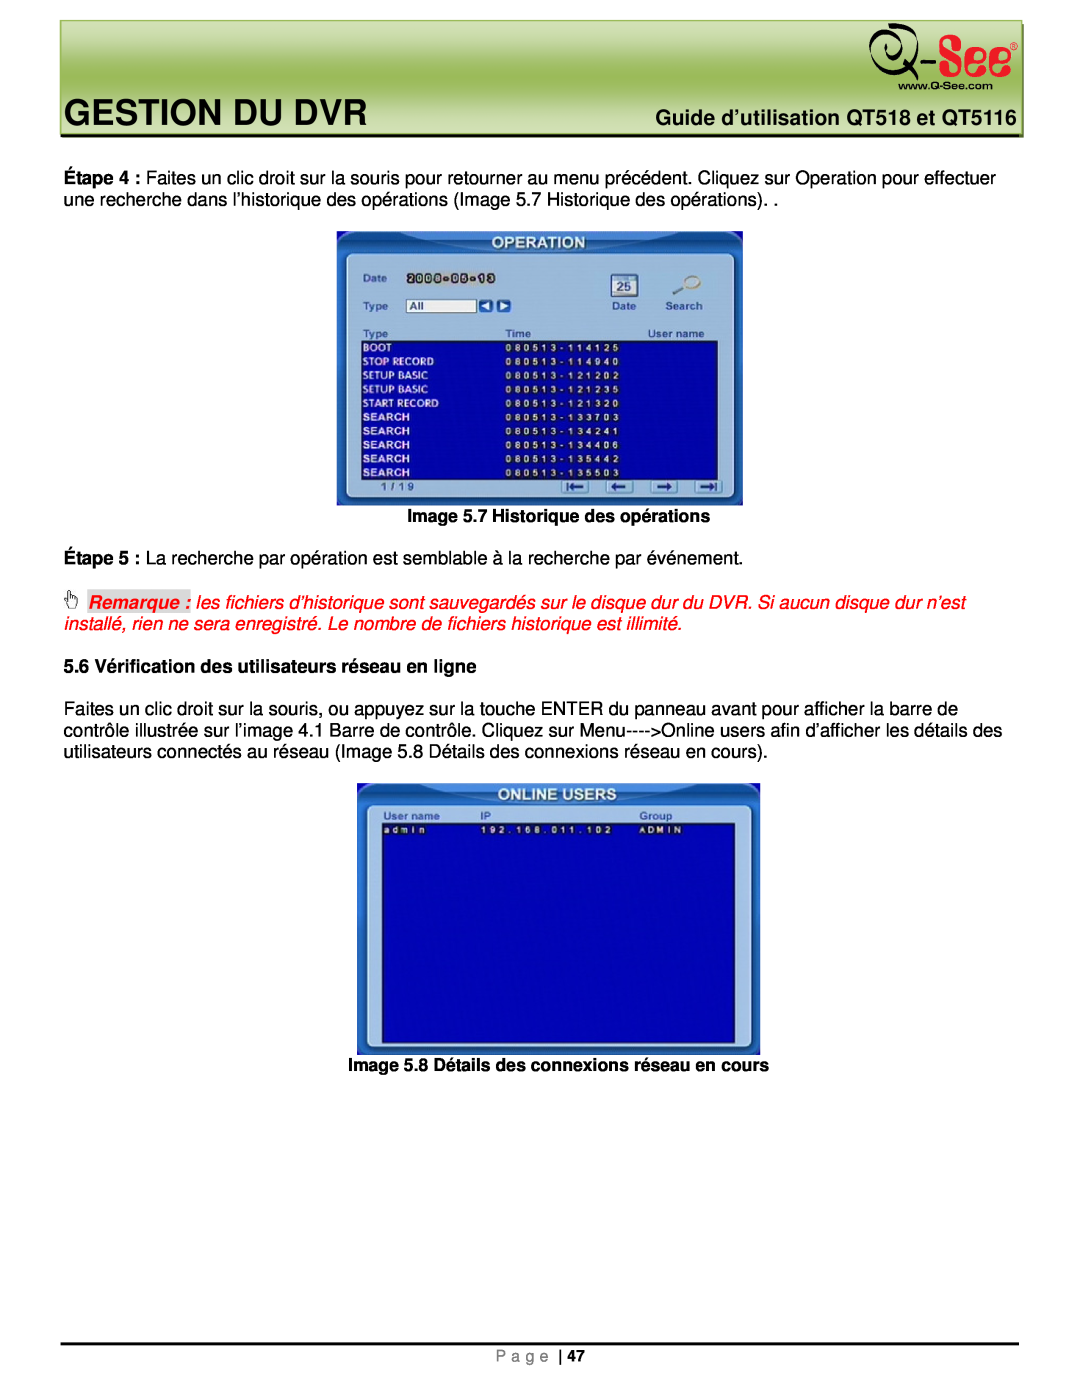 Q-See manual Gestion Du Dvr, Guide d’utilisation QT518 et QT5116, 5.6 Vérification des utilisateurs réseau en ligne 